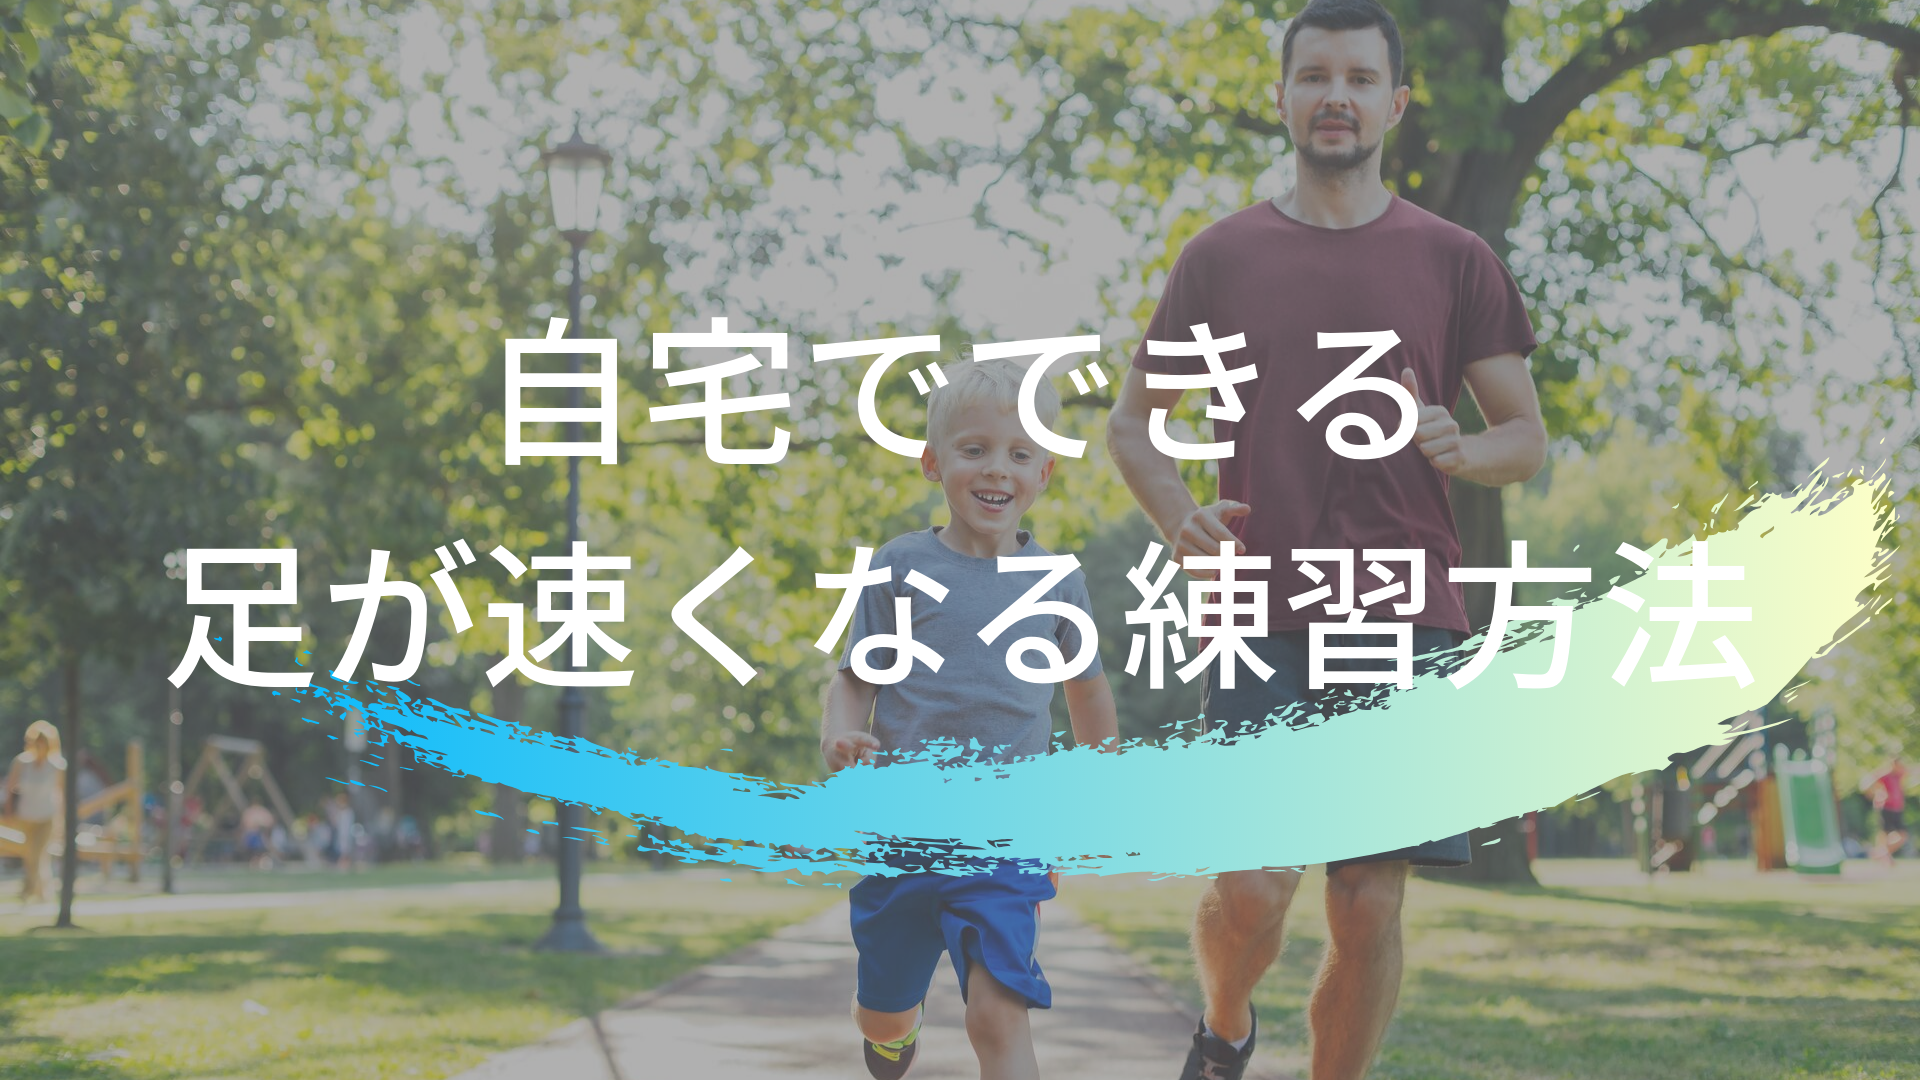 かけっこ教室に通えない親必見 足が速くなるための自主トレに必要な道具はたった3000円 東京で小学生の足を確実に速く するならgoogle 4 9の陸上アカデミア